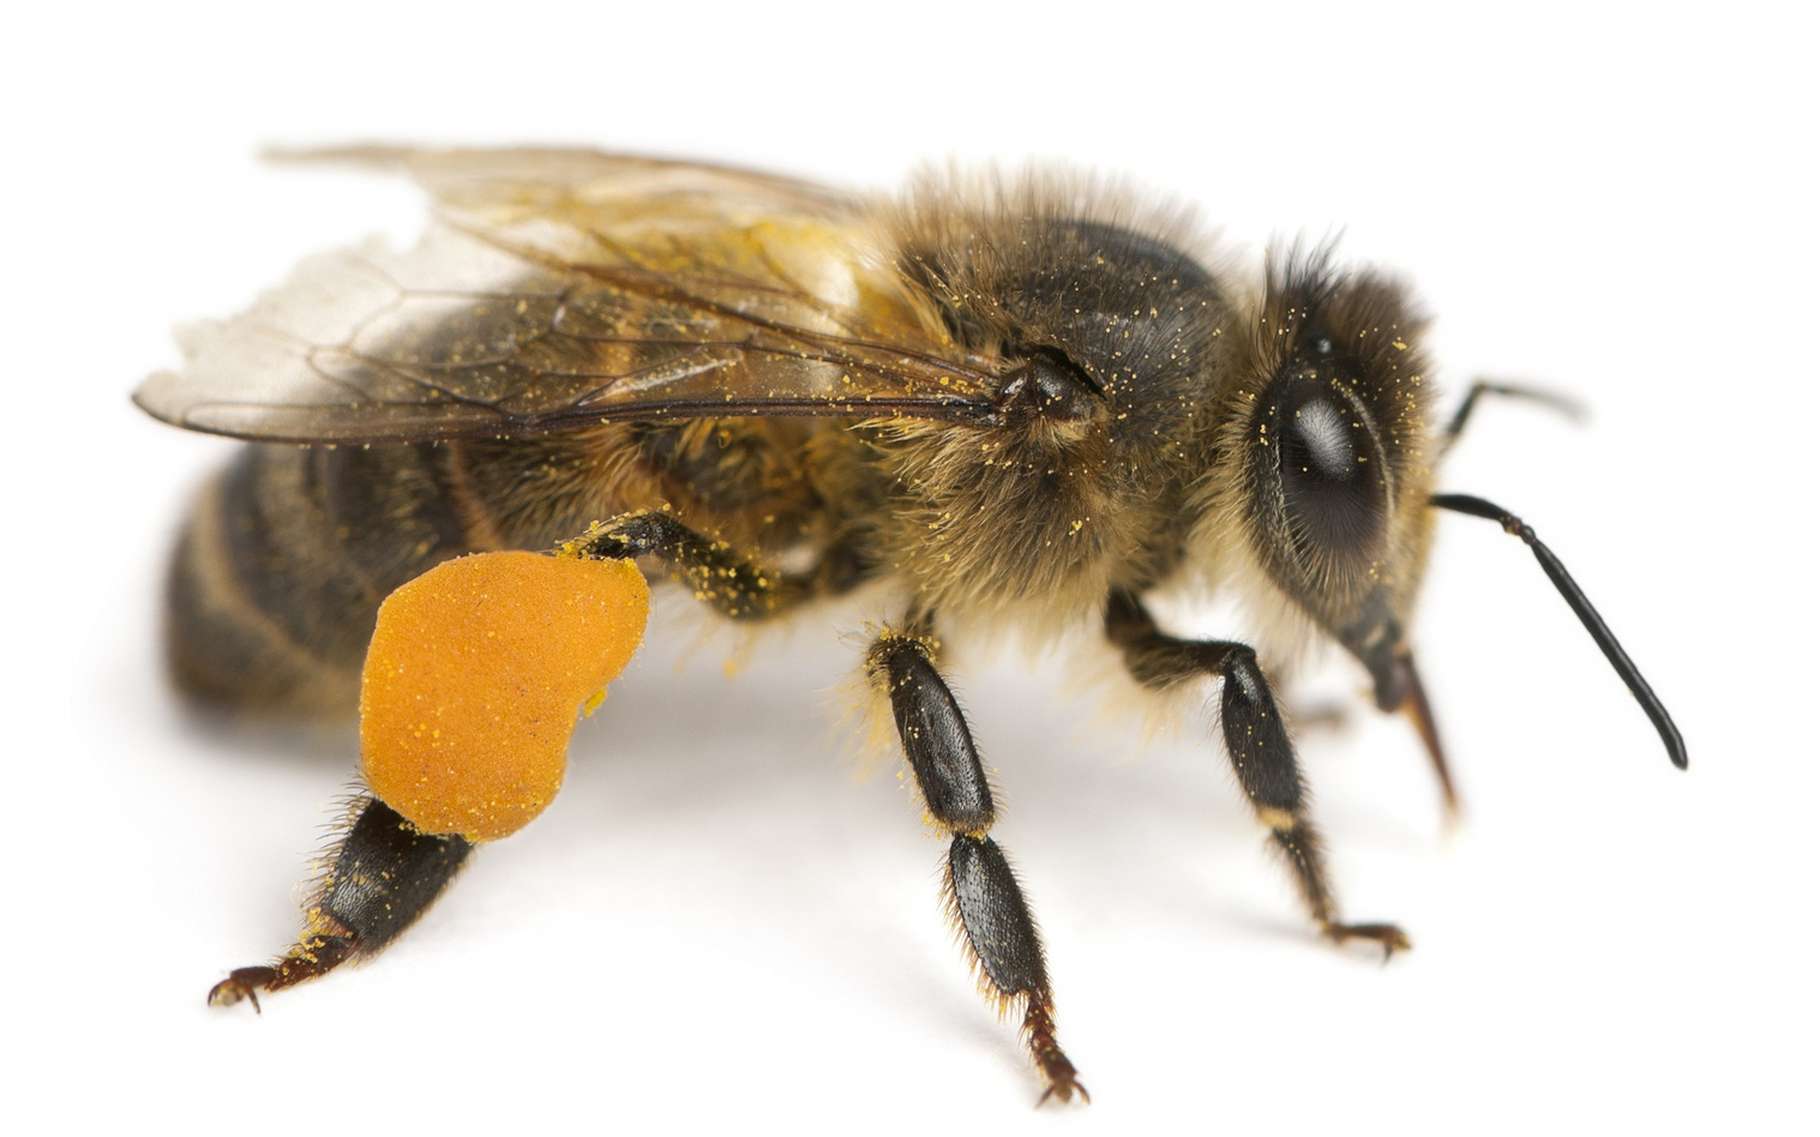 Vous avez peur de vous faire piquer par une abeille ? Lisez plutôt ce top 7. © Eric Isselee, Shutterstock